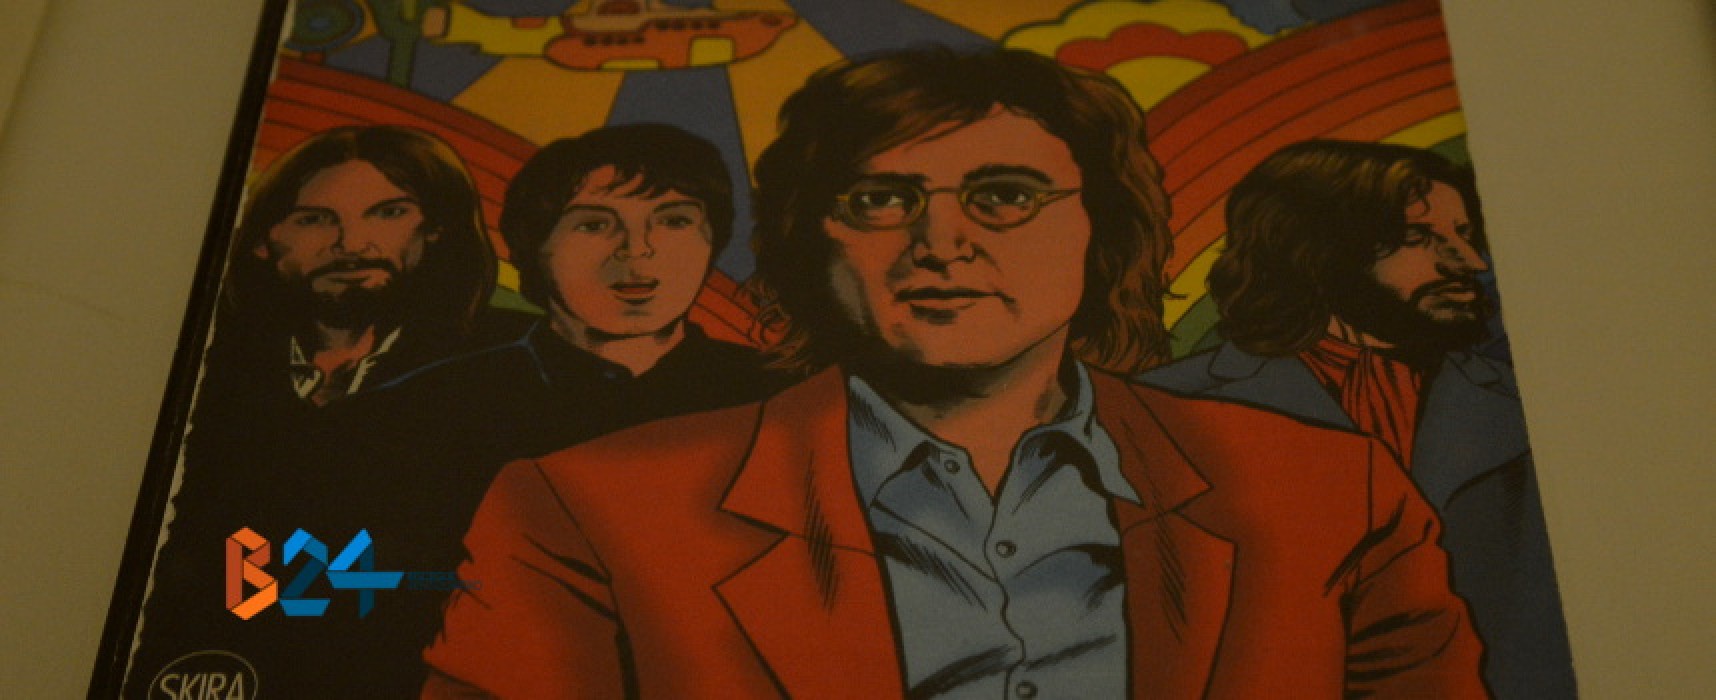 Beatles a fumetti, inaugurata la mostra presso il Laboratorio Urbano di palazzo Tupputi /FOTO